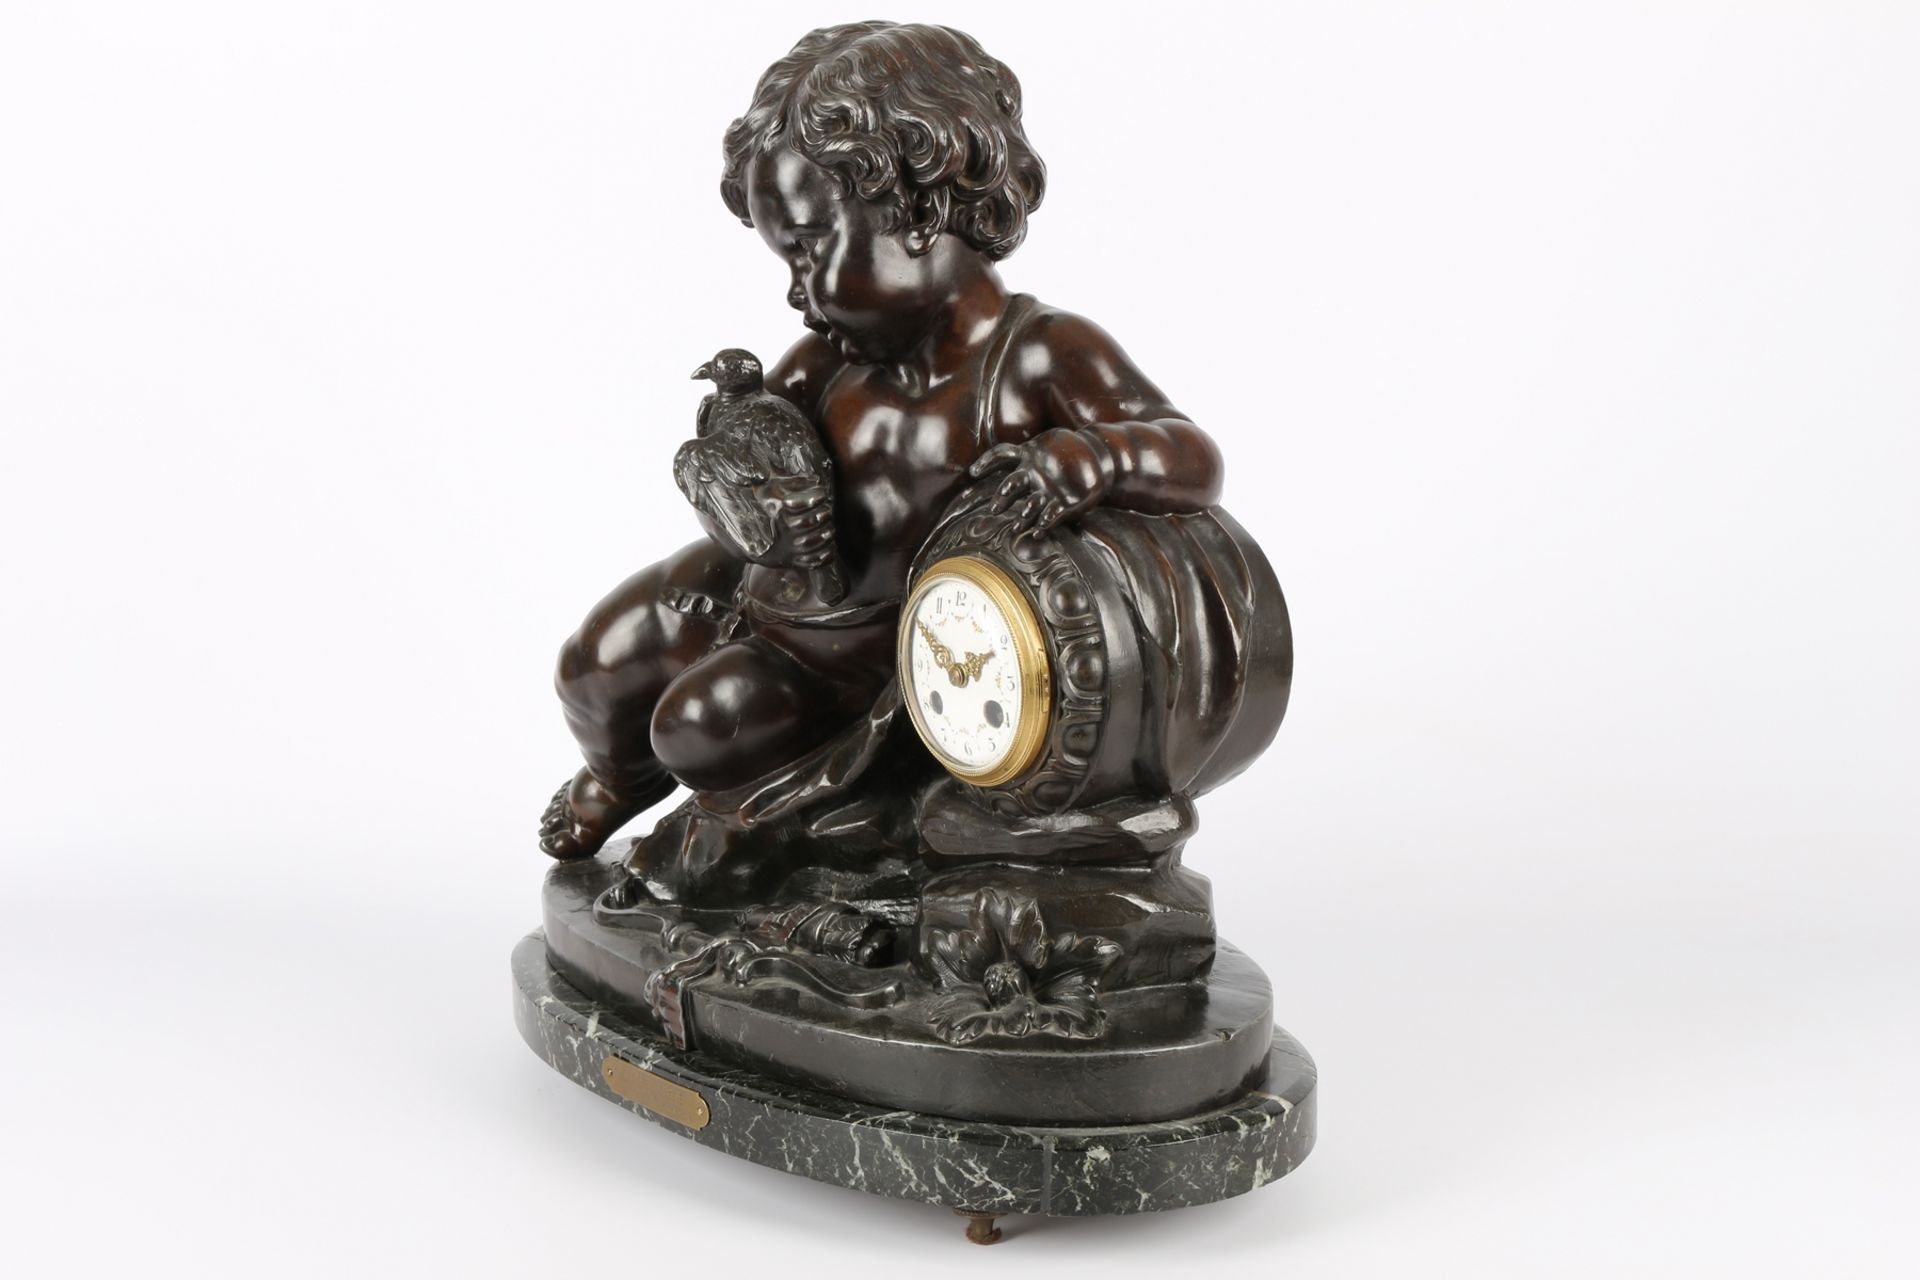 Große Putto Kaminuhr, Frankreich 19. Jahrhundert, french putti mantel clock 19th century, - Image 3 of 5